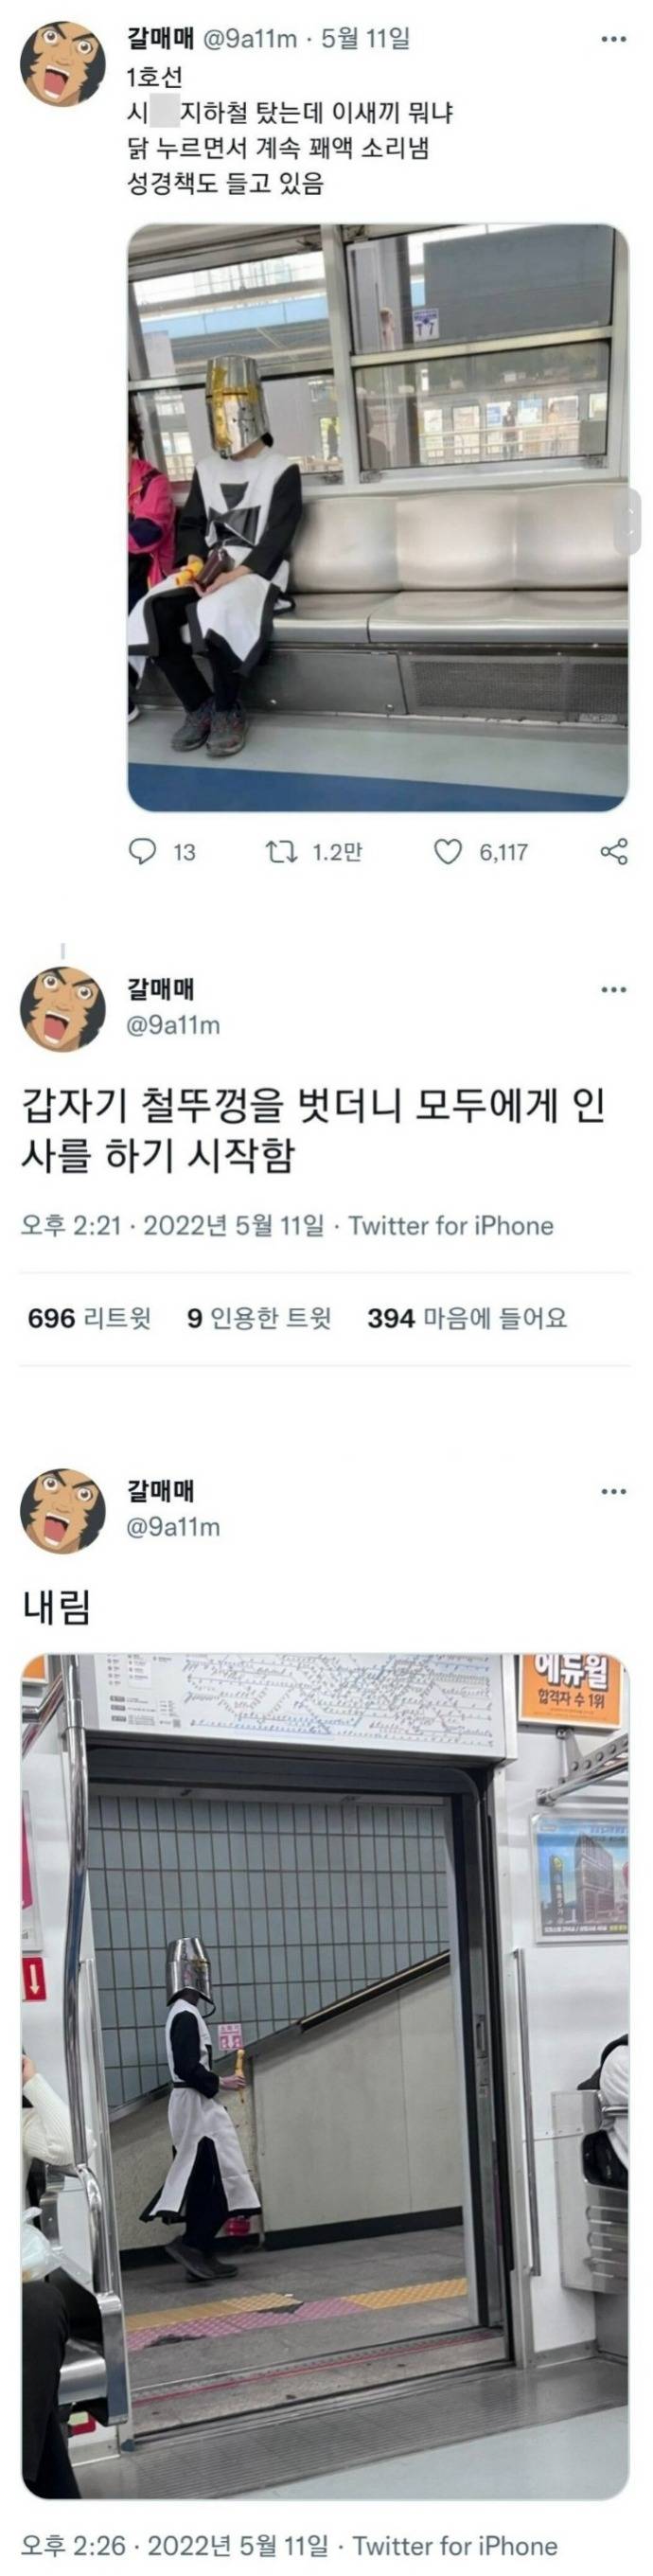 화제의 1호선 성기사 인터뷰